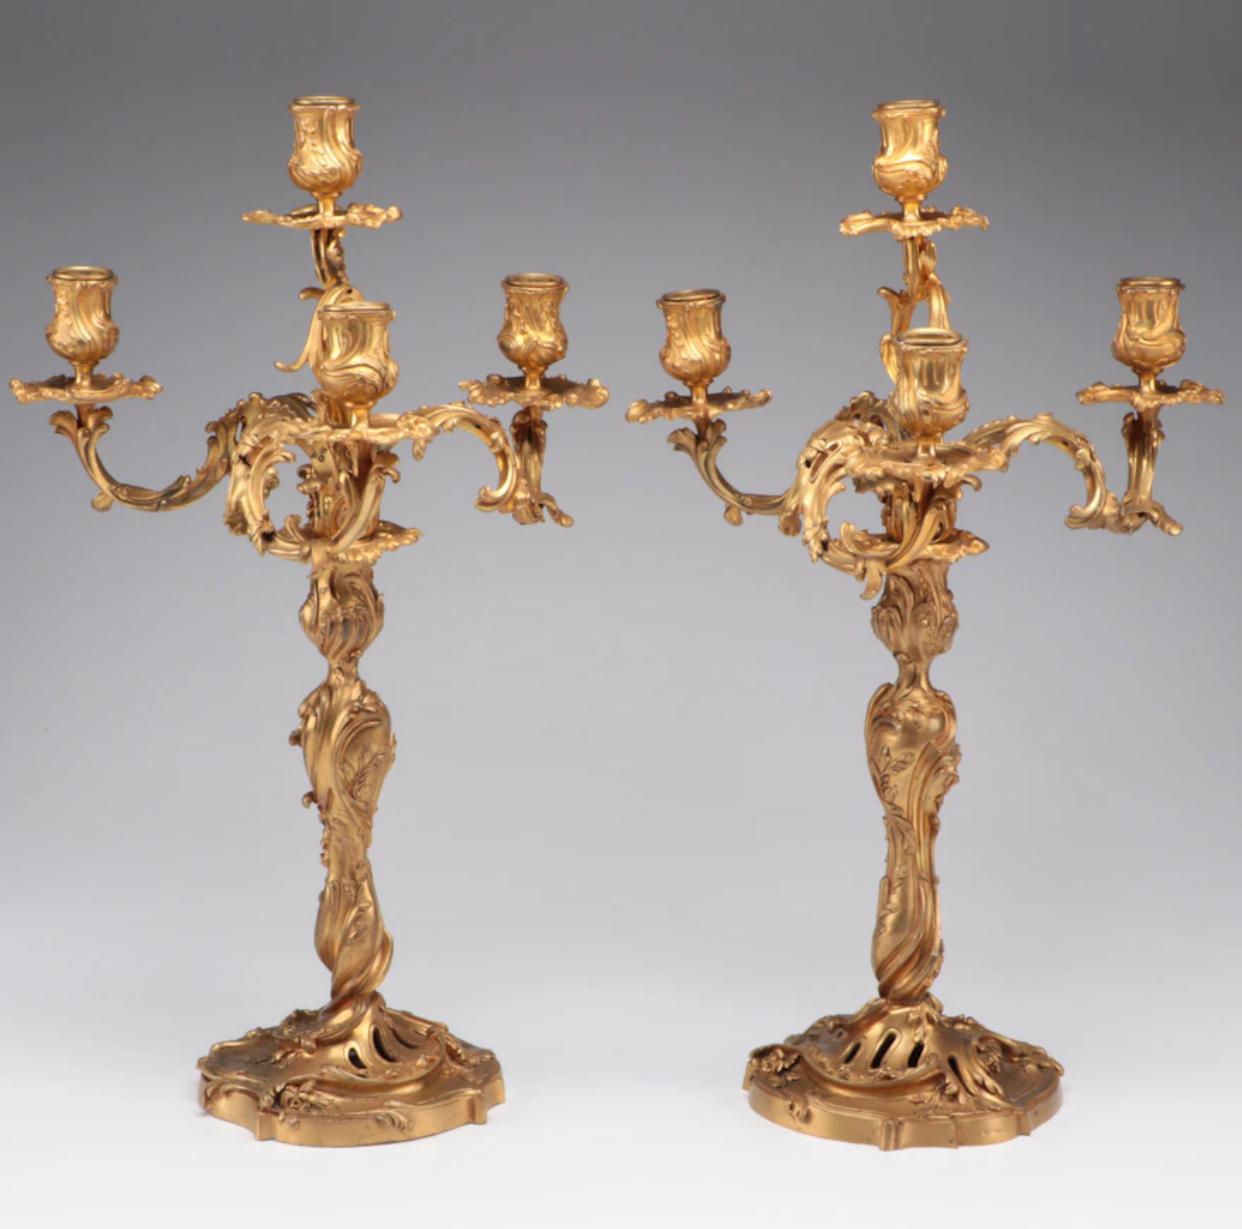 Paar D'Ore Bronze vier Licht Kandelaber mit unglaublichen Akanthusblatt Ormolu. Jeder Kerzenhalter ist mit einer dekorativen Bobeche versehen. Schwer, und wie der Name schon sagt, sehr gut gegossen. Punzierungen Ravinet D'Enfert. 

Das 1845 von E.